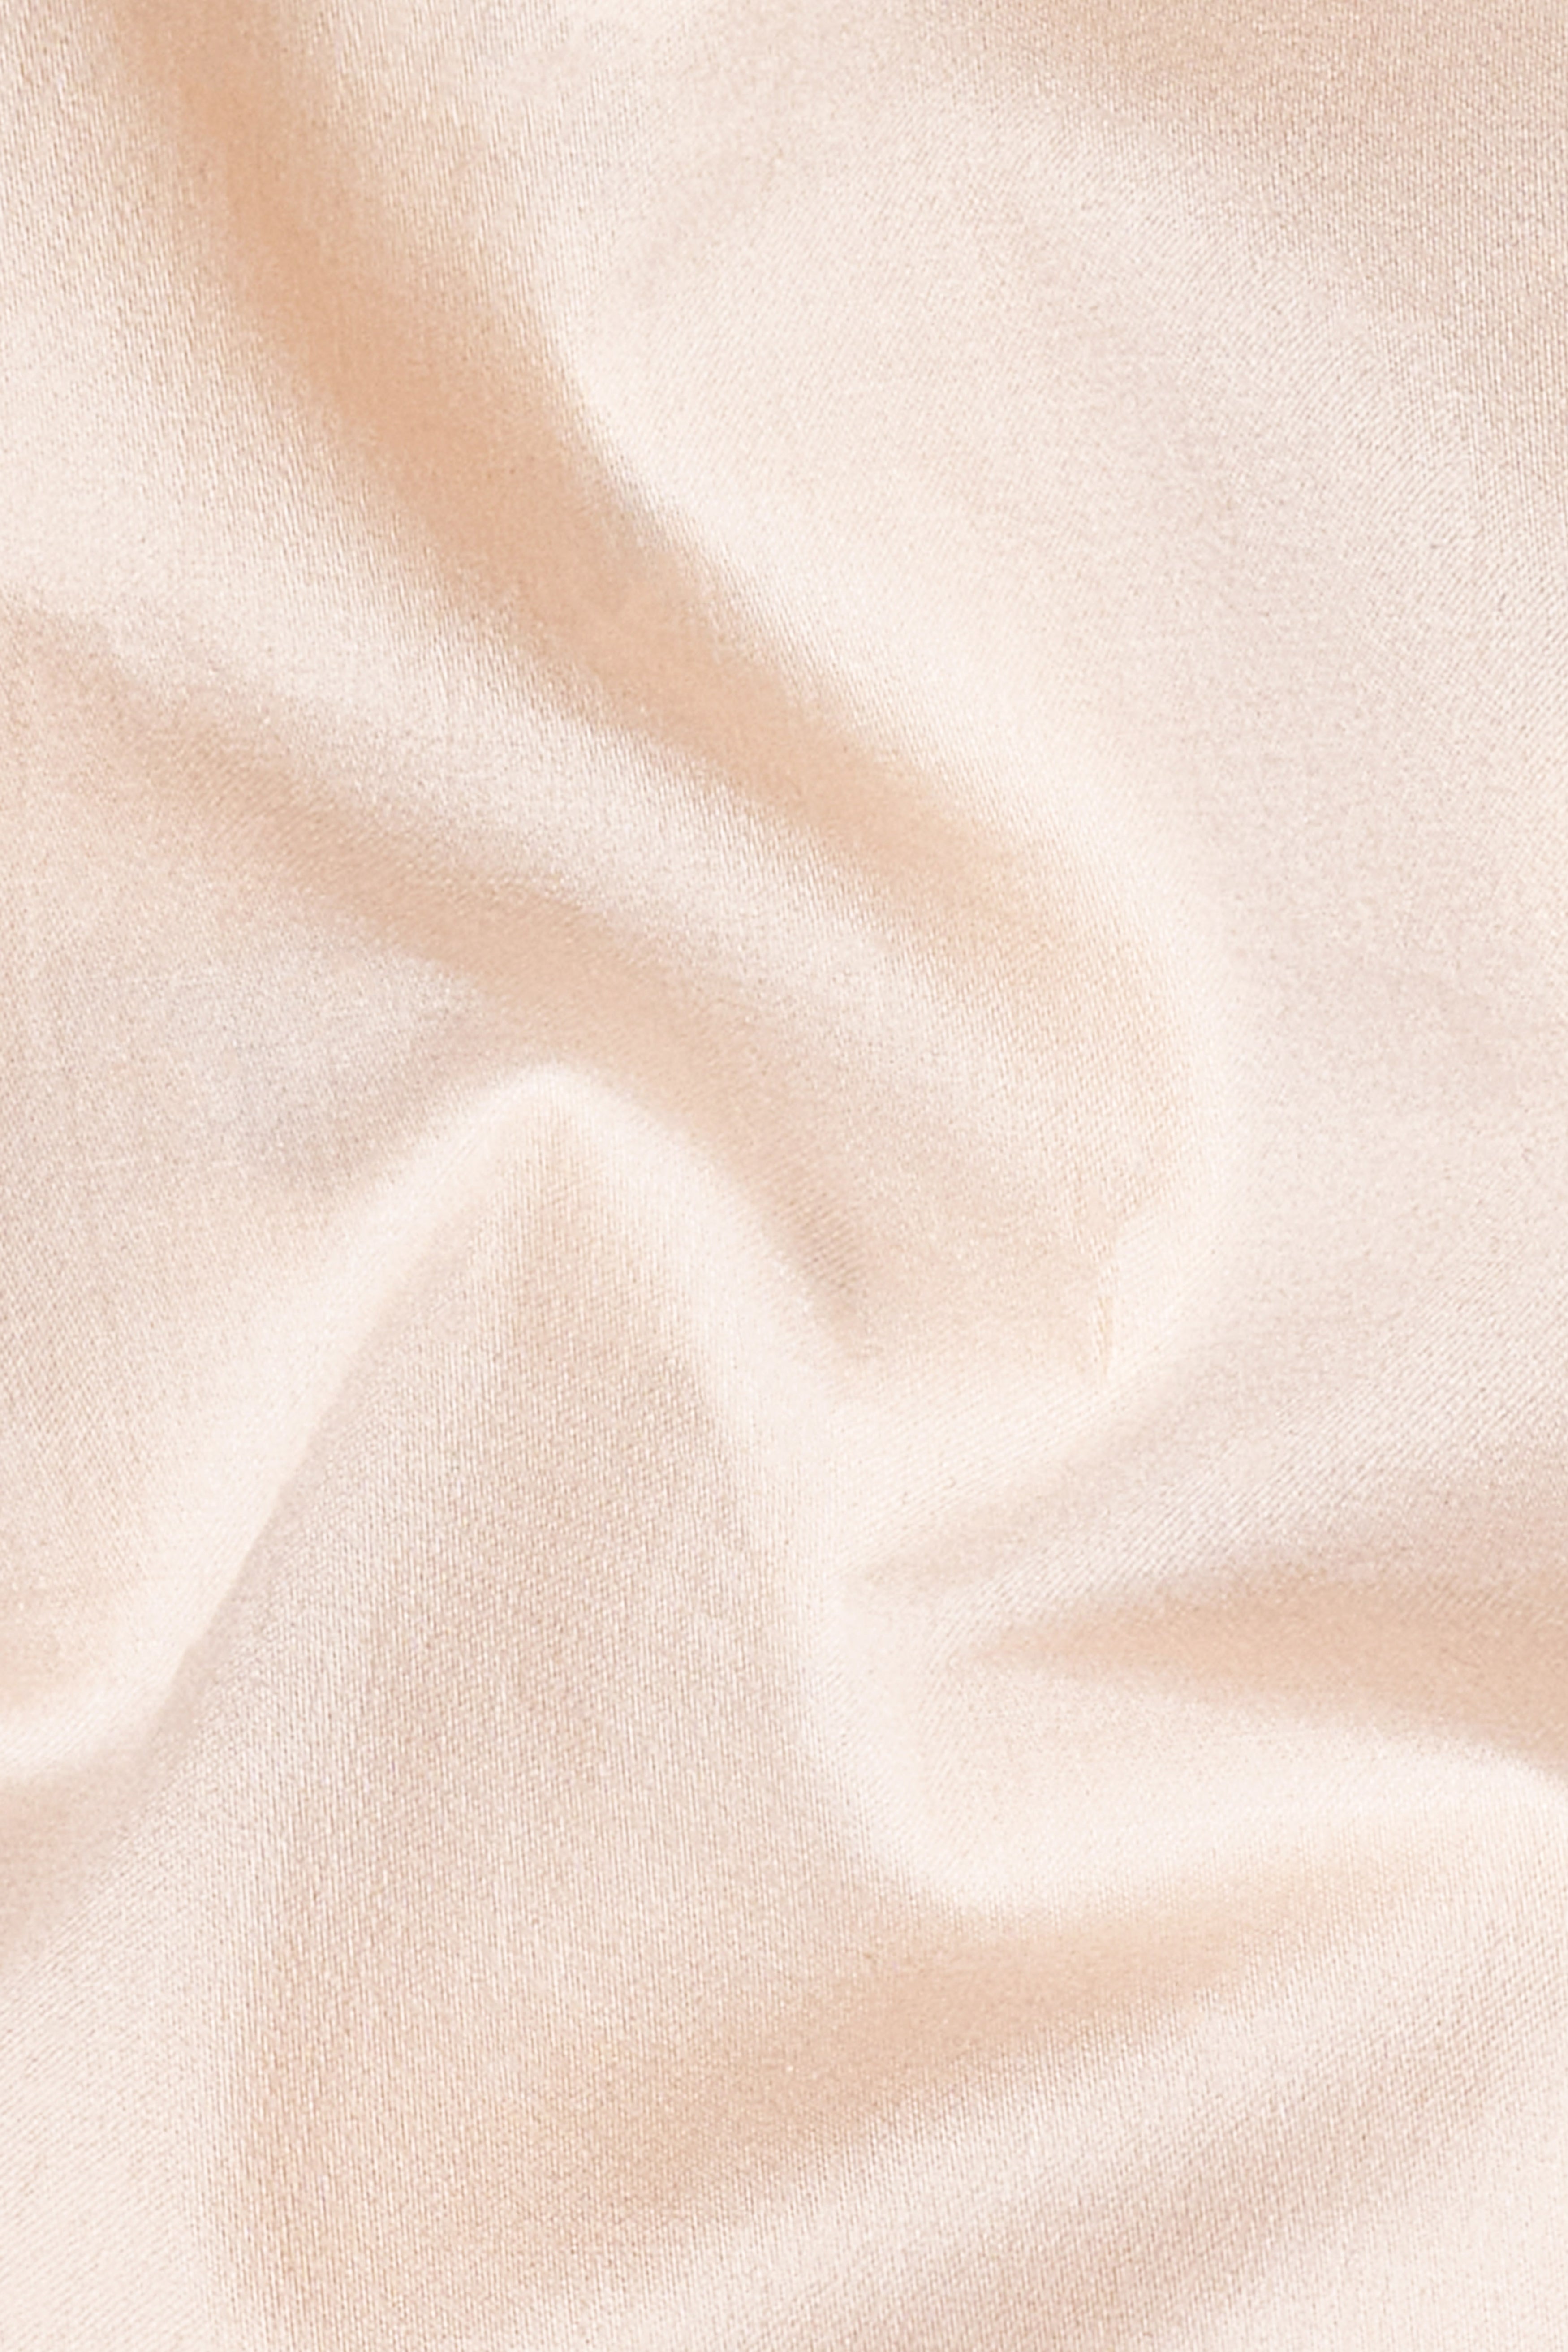 Gainsboro Beige Subtle Sheen Super Soft Premium Cotton Pathani Set